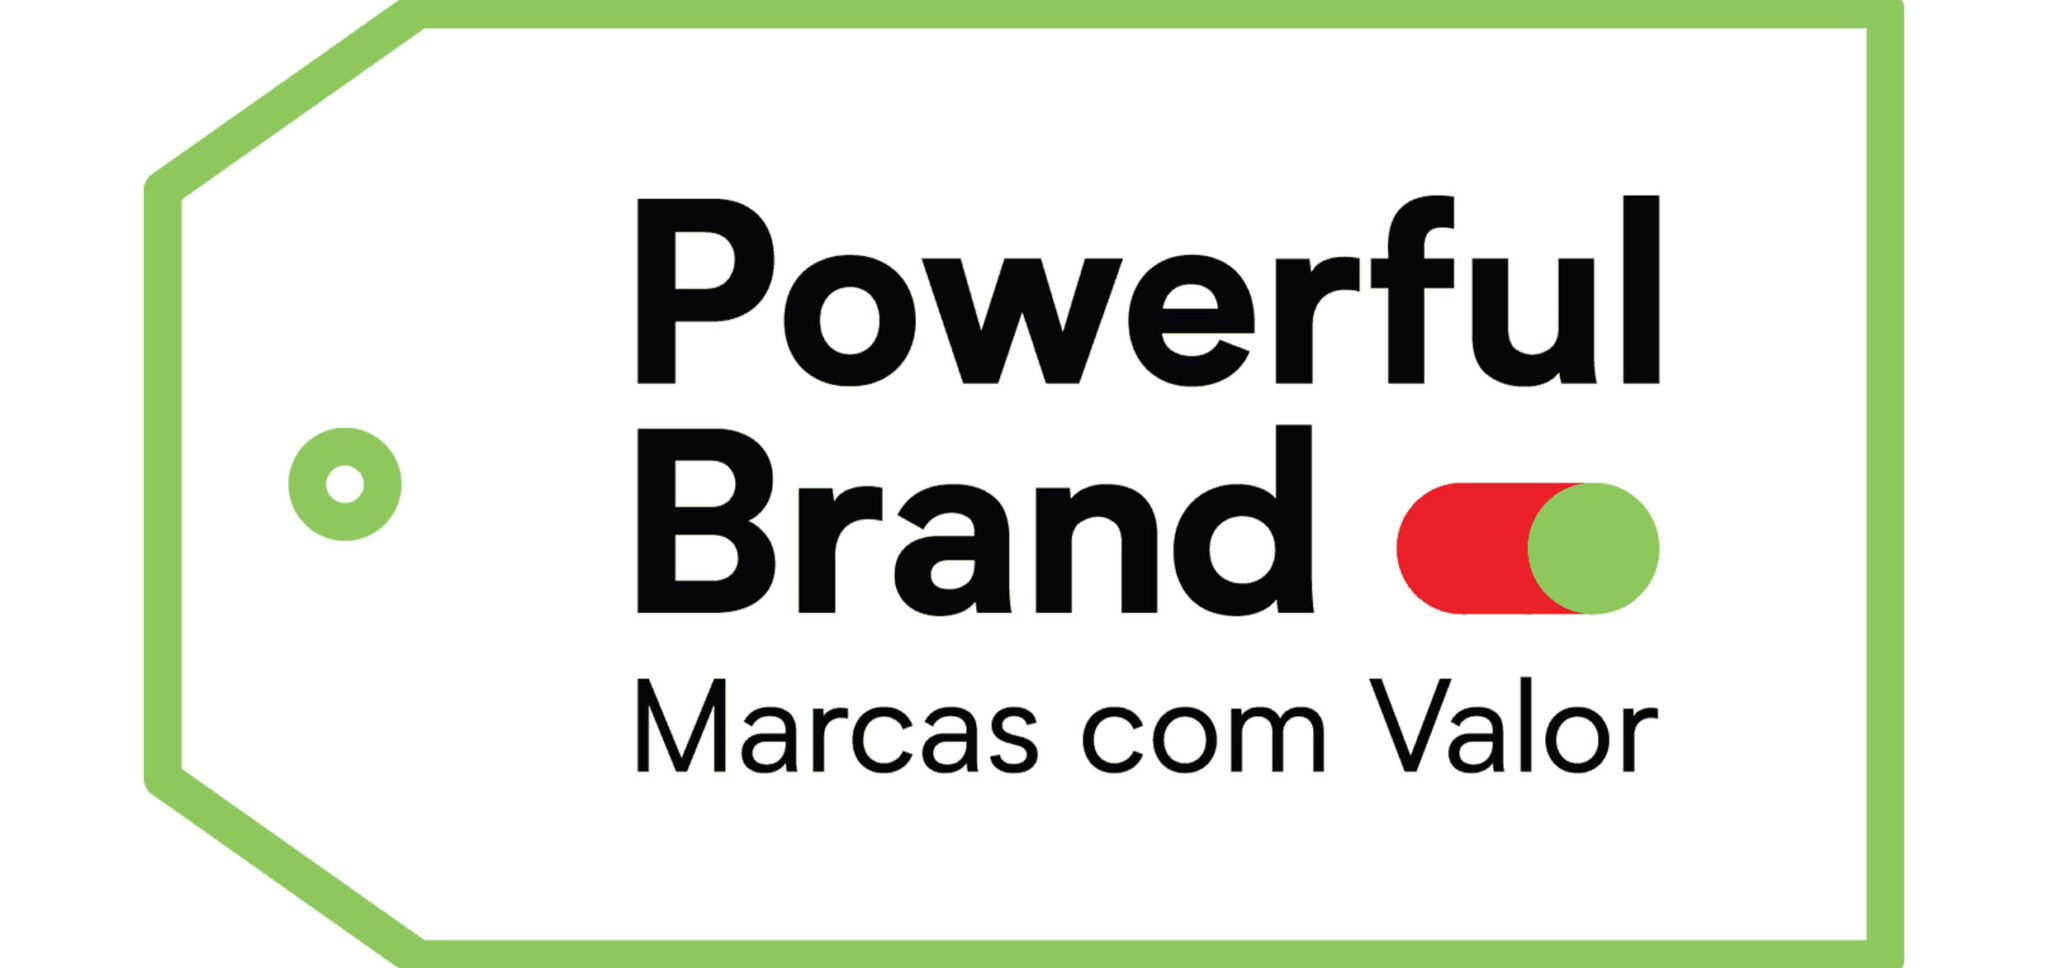 powerful-brand-marcas-com-valor-3